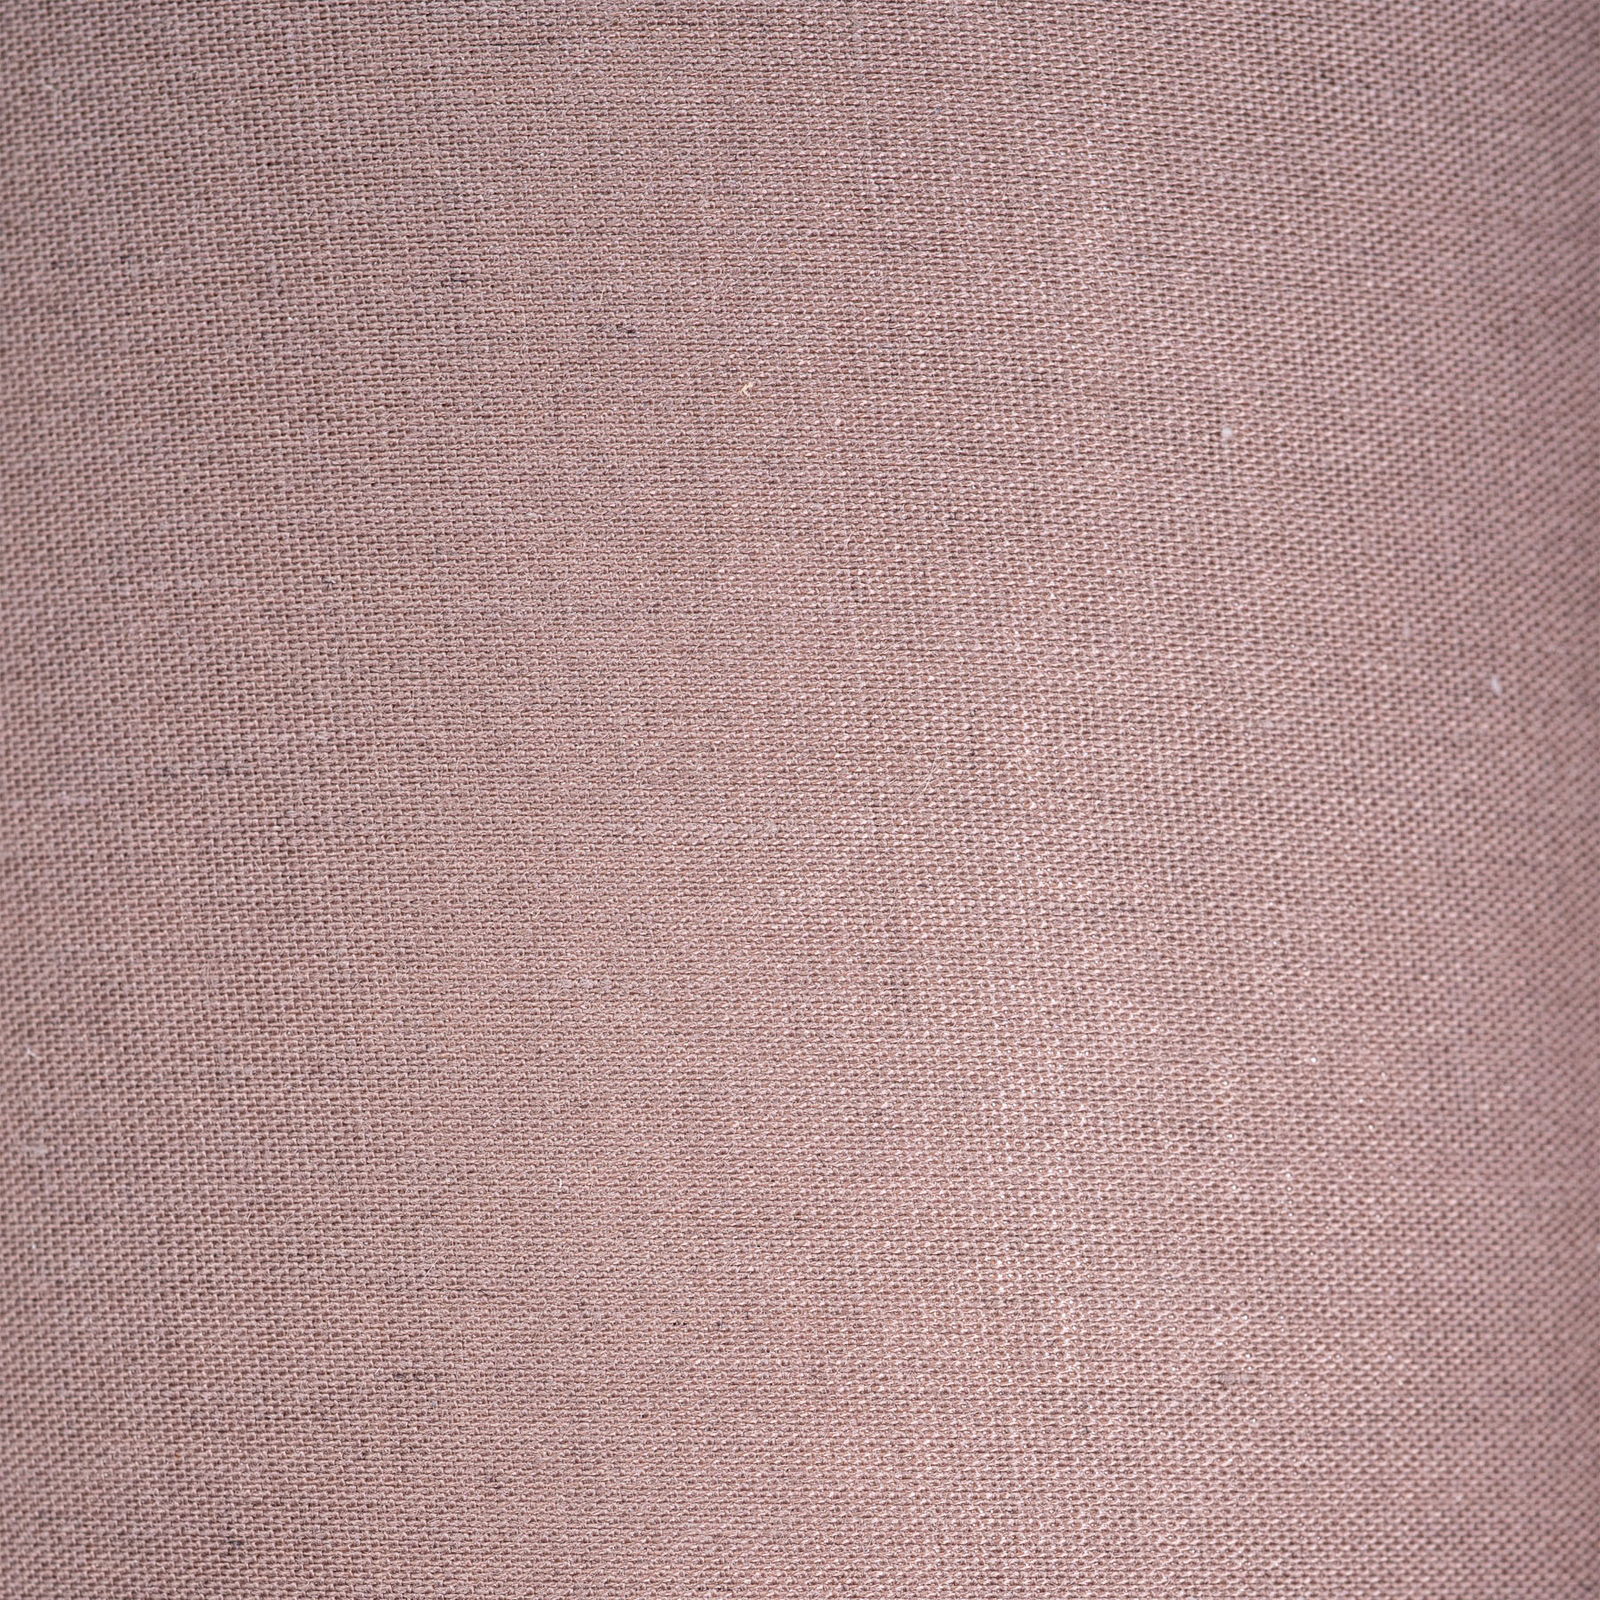 Stropné svietidlo Maron 3-pl., textil, hnedá/zlatá